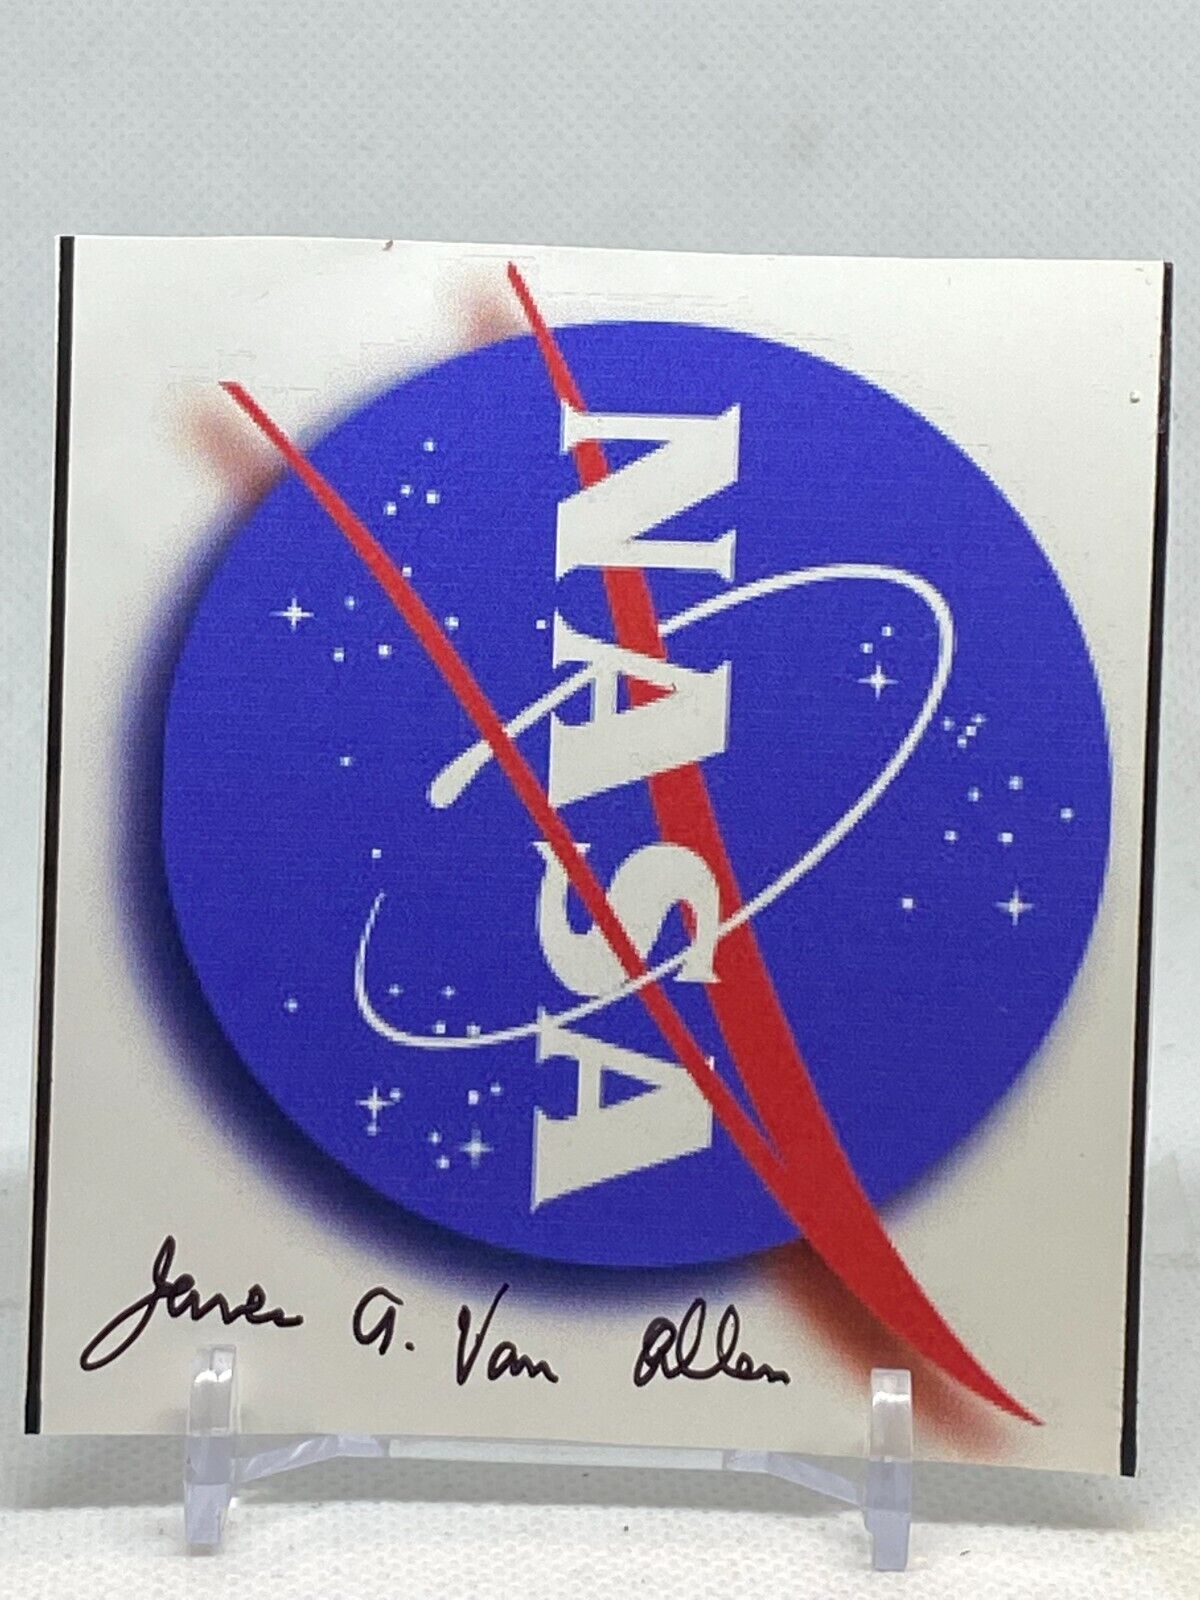 James Van Allen signed  NASA photograph known for Van Allen Radiation Belts 3x3